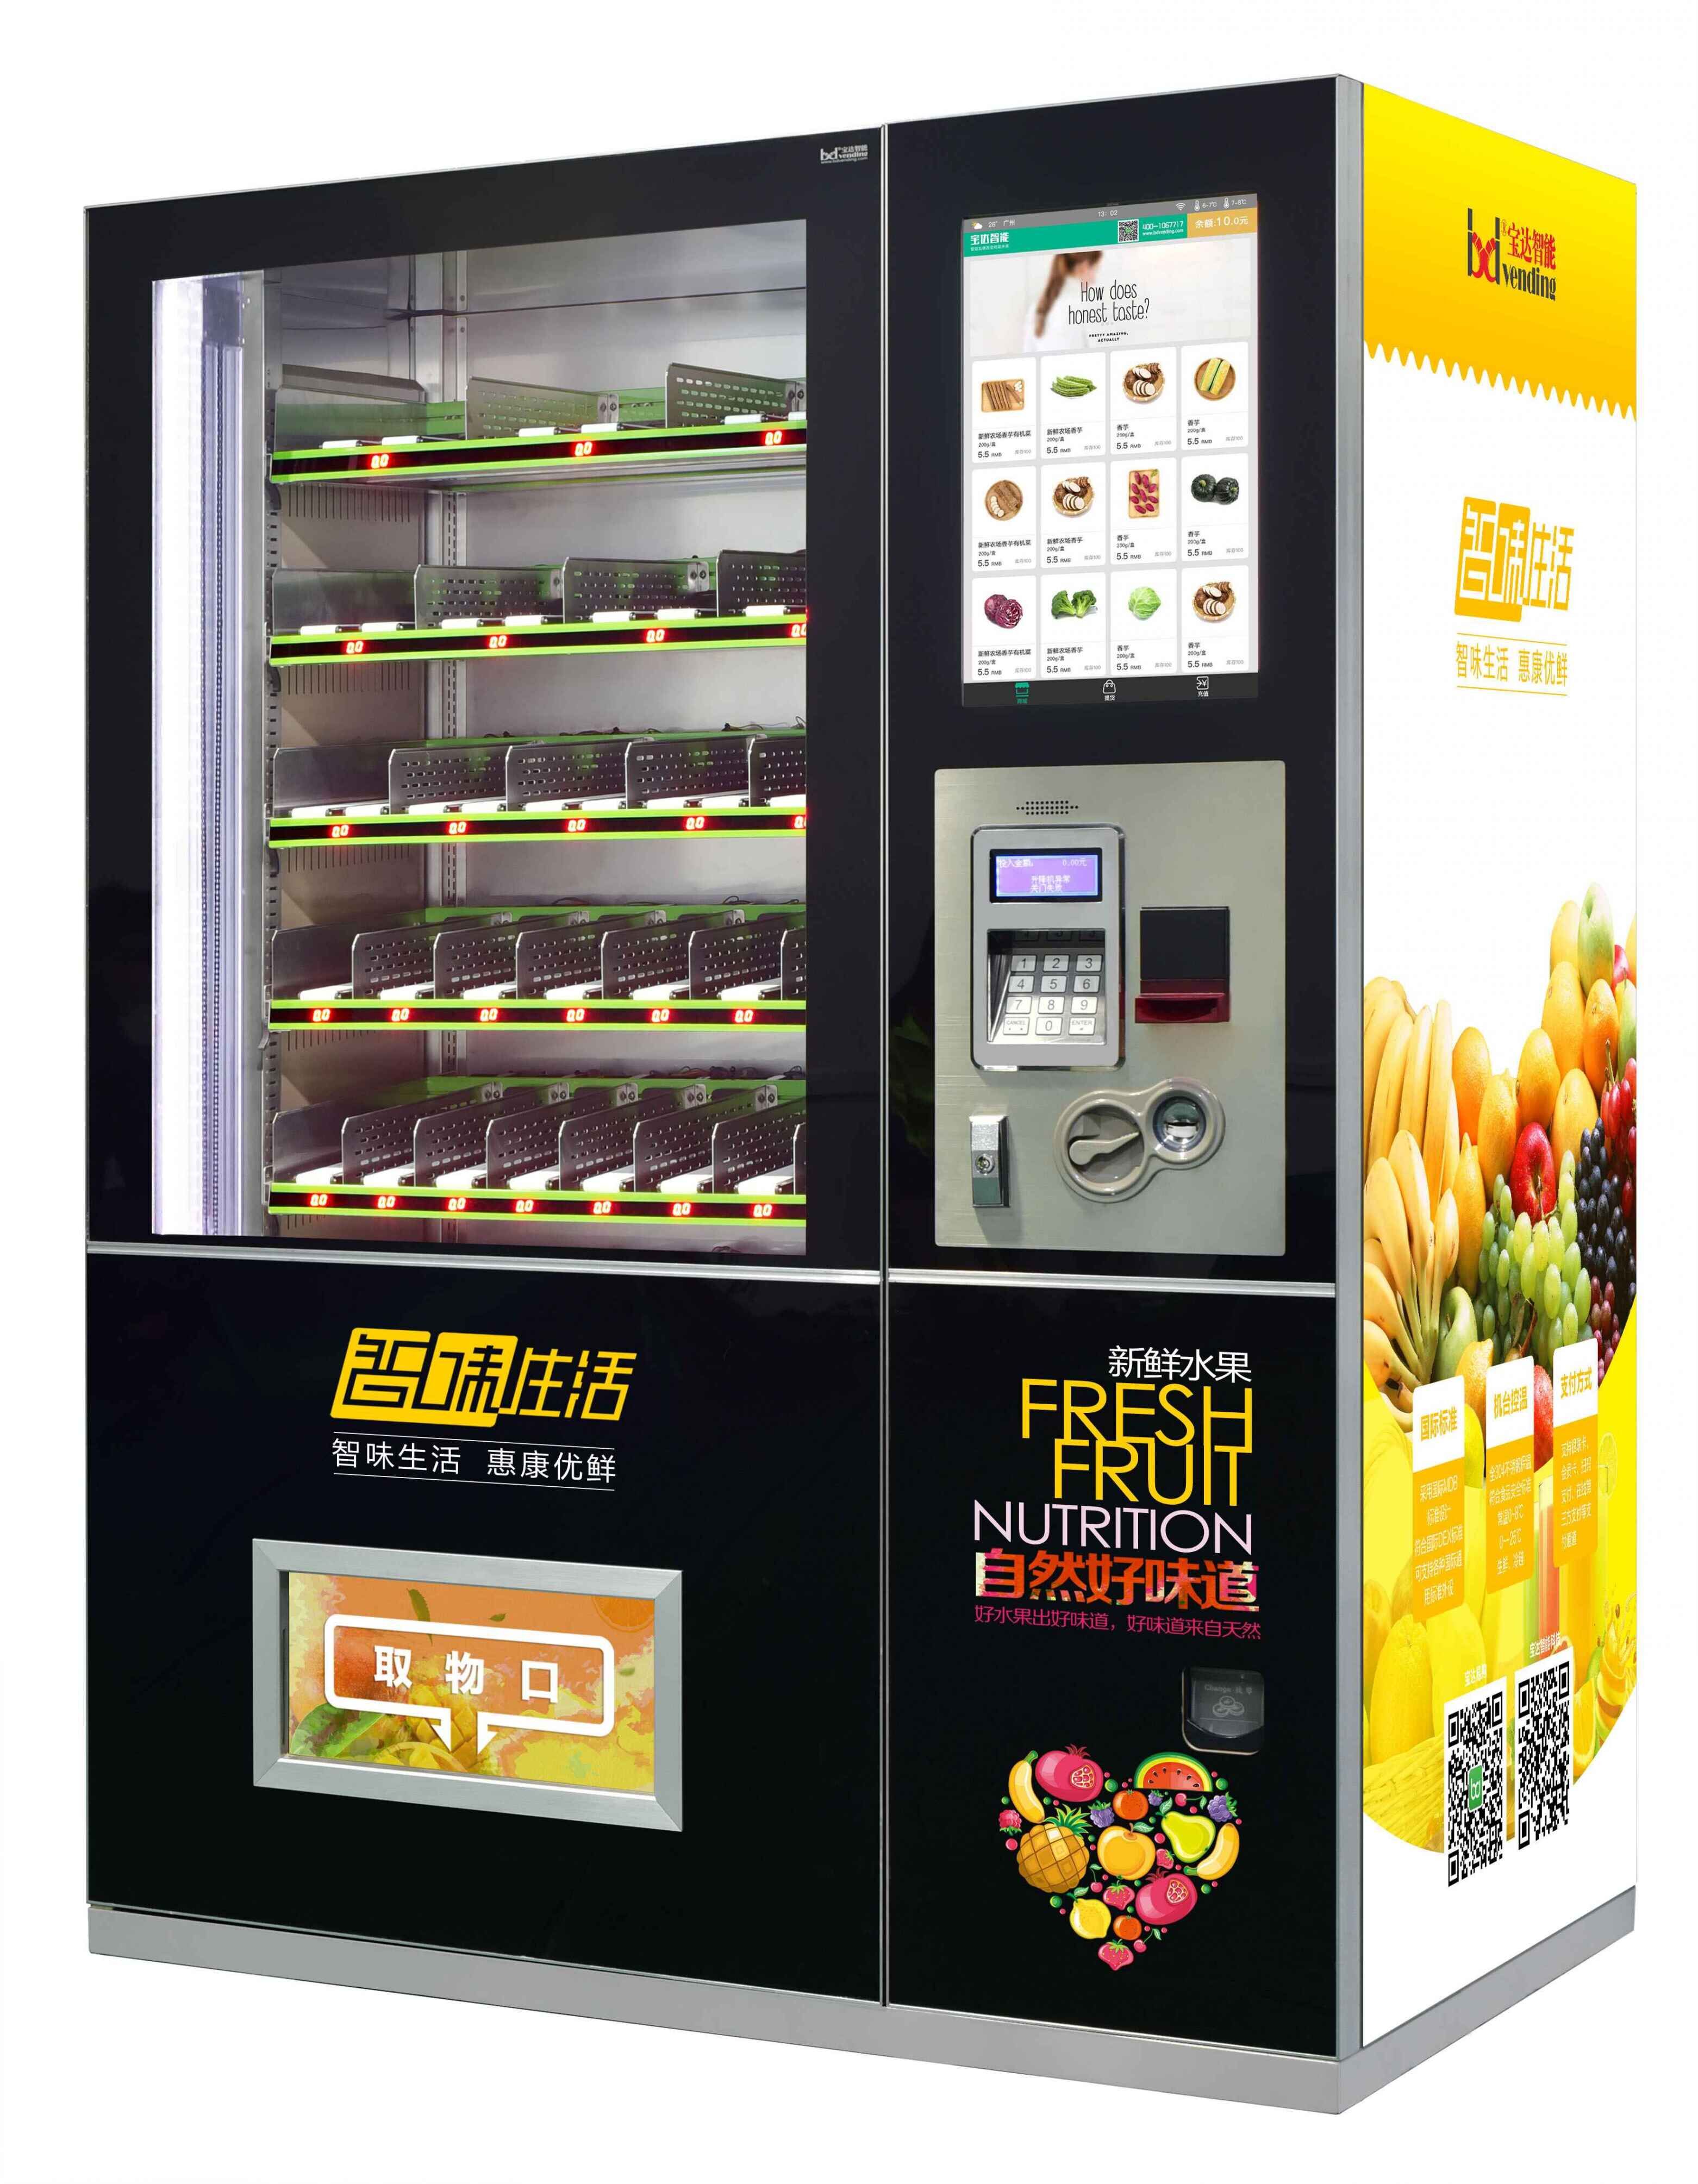 广州蔬菜售货机 宝达生鲜自动售货机 饮料自动售货机 宝达生鲜自动售货机 24h生鲜